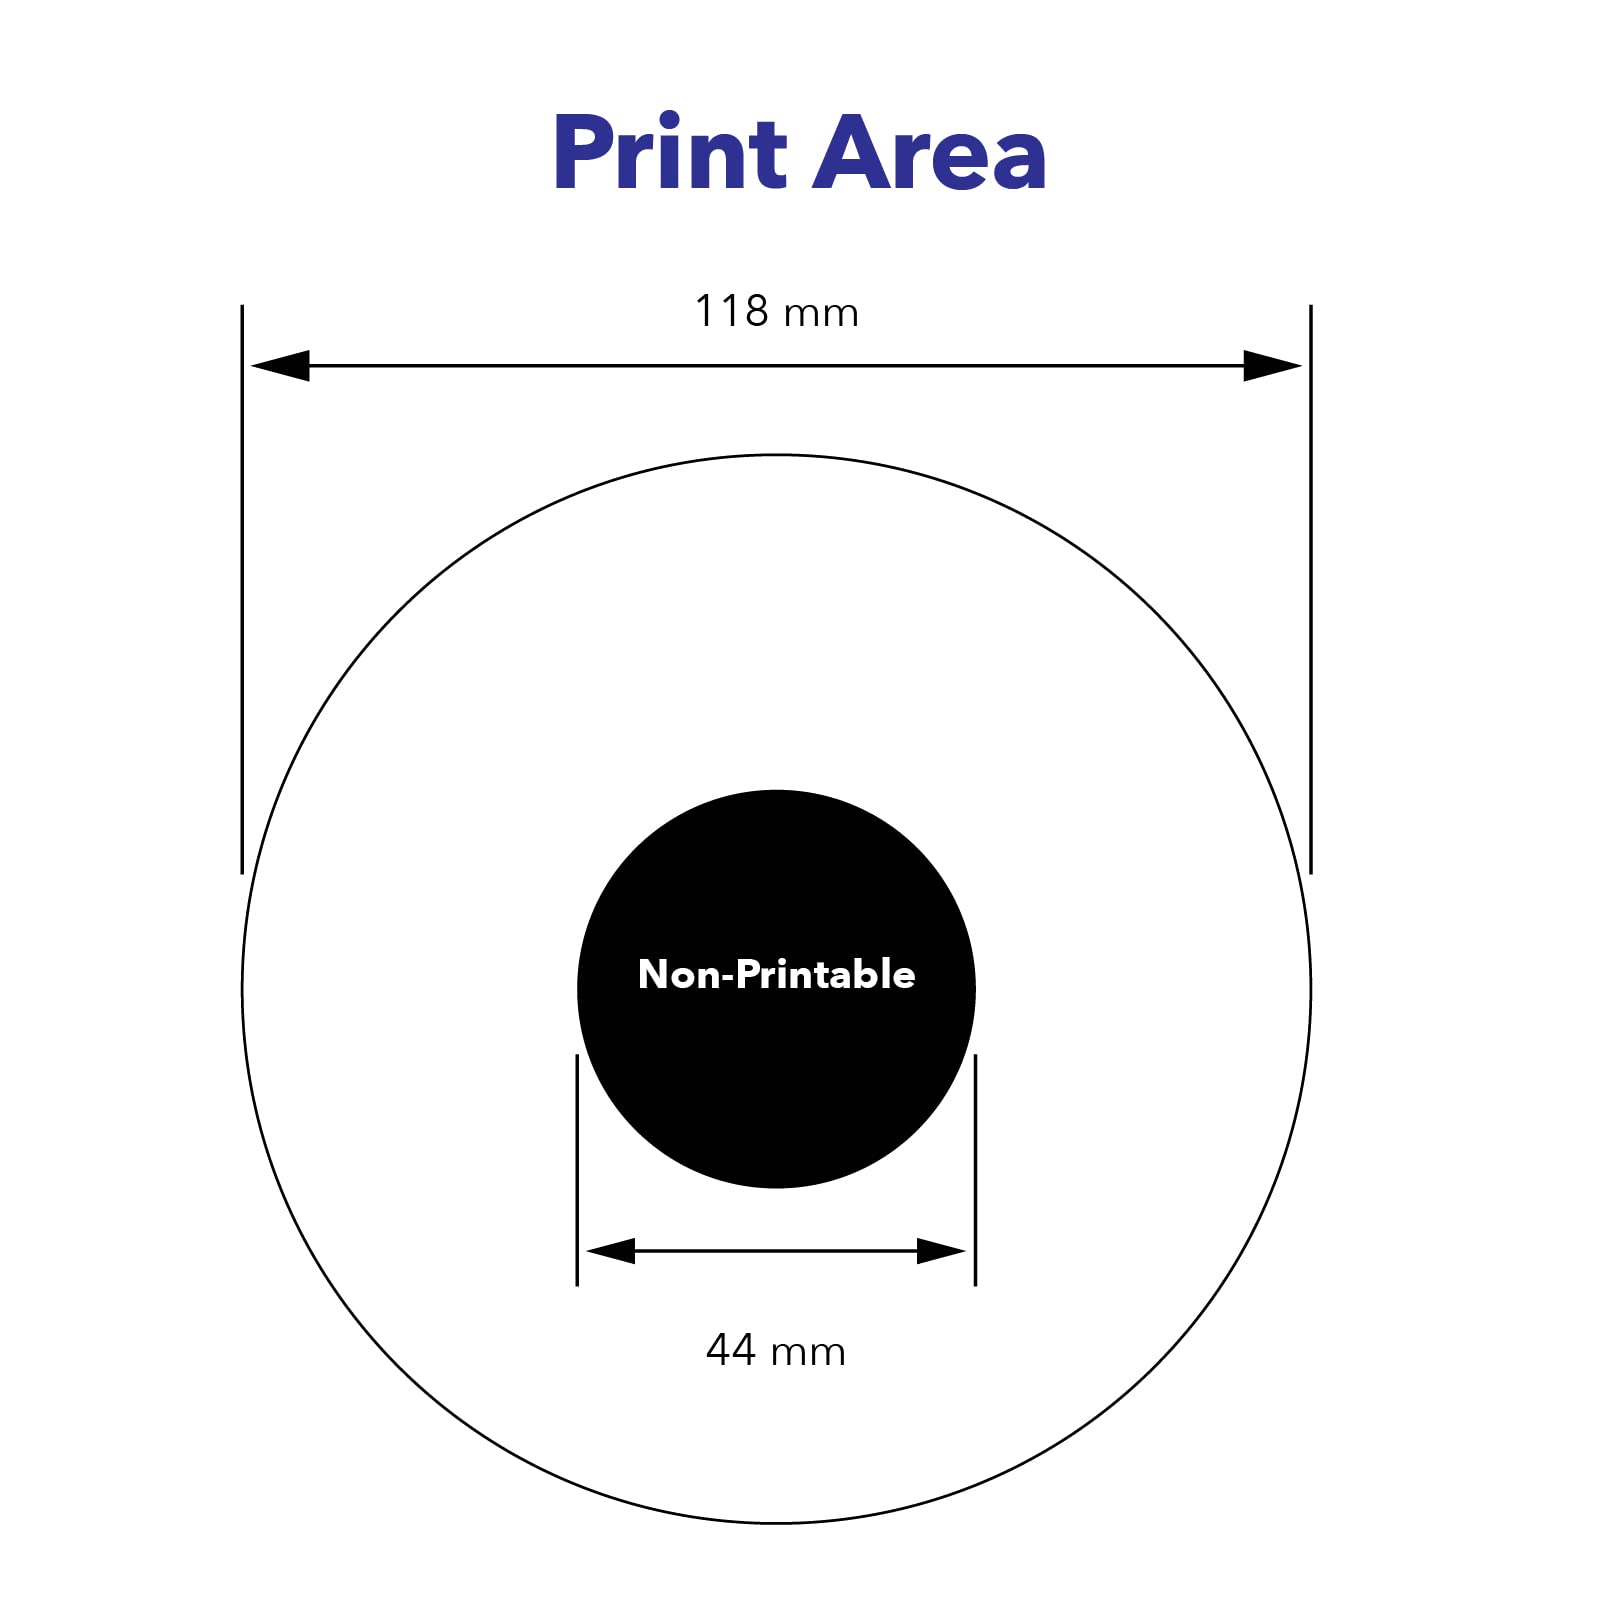 Verbatim DVD-R 4.7GB 16X White Inkjet Printable with Branded Hub, 50-Disc